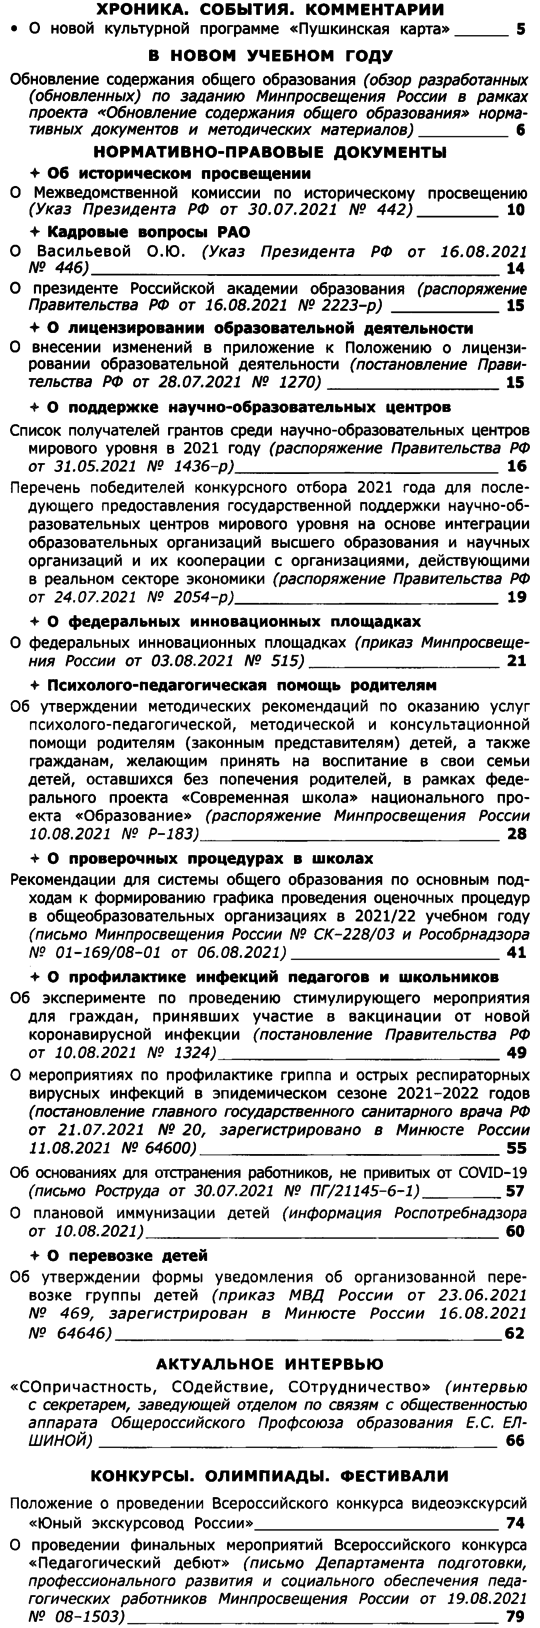 Вестник образования России 2021-17.png